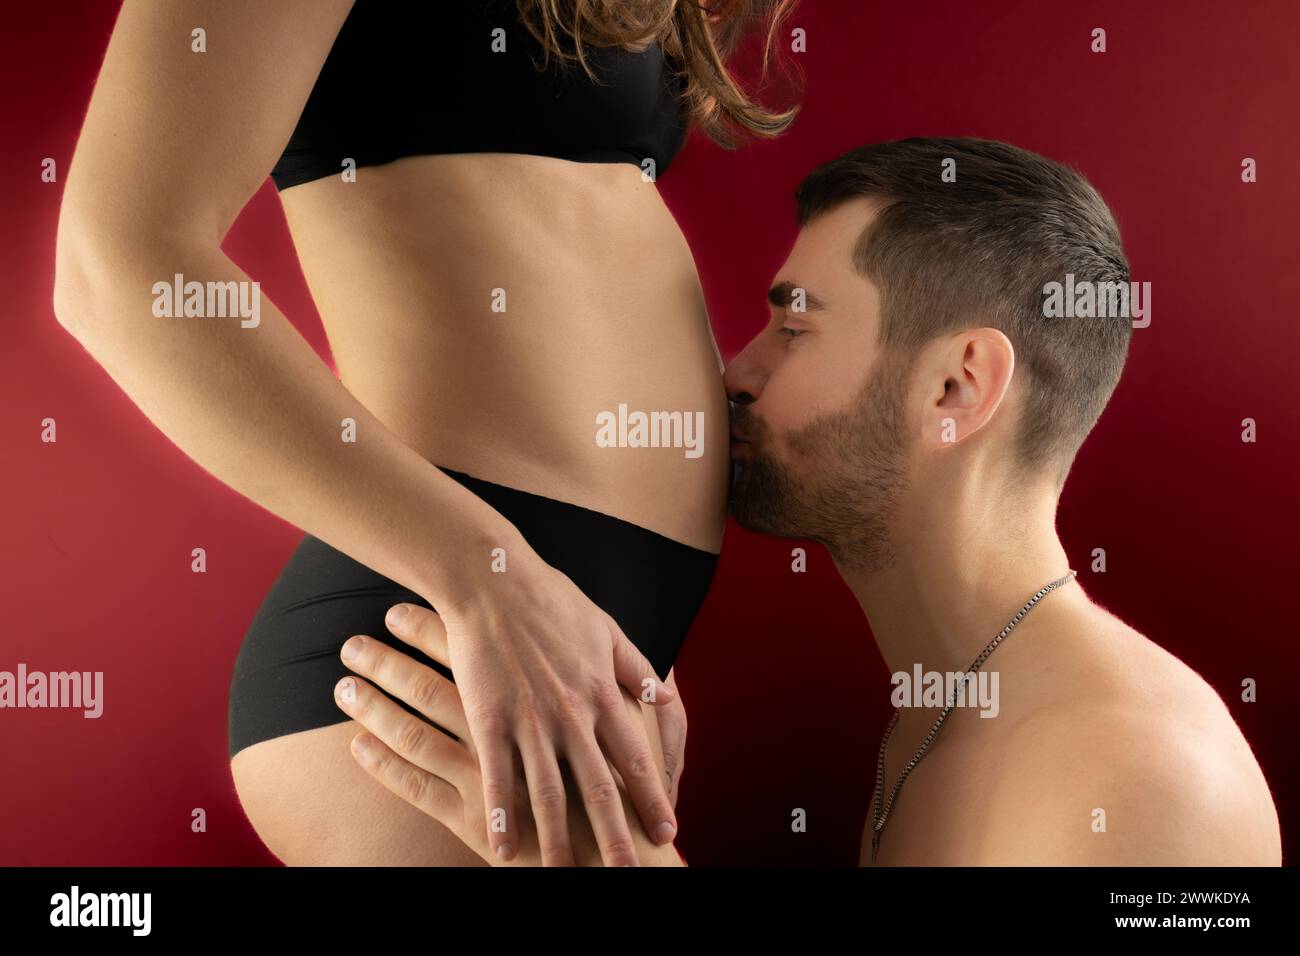 Descripción: Vista del vientre de la mujer embarazada con padre feliz besándolo. Embarazo Primer trimestre - semana 18. Vista lateral. Fondo rojo. Tiro brillante. Foto de stock